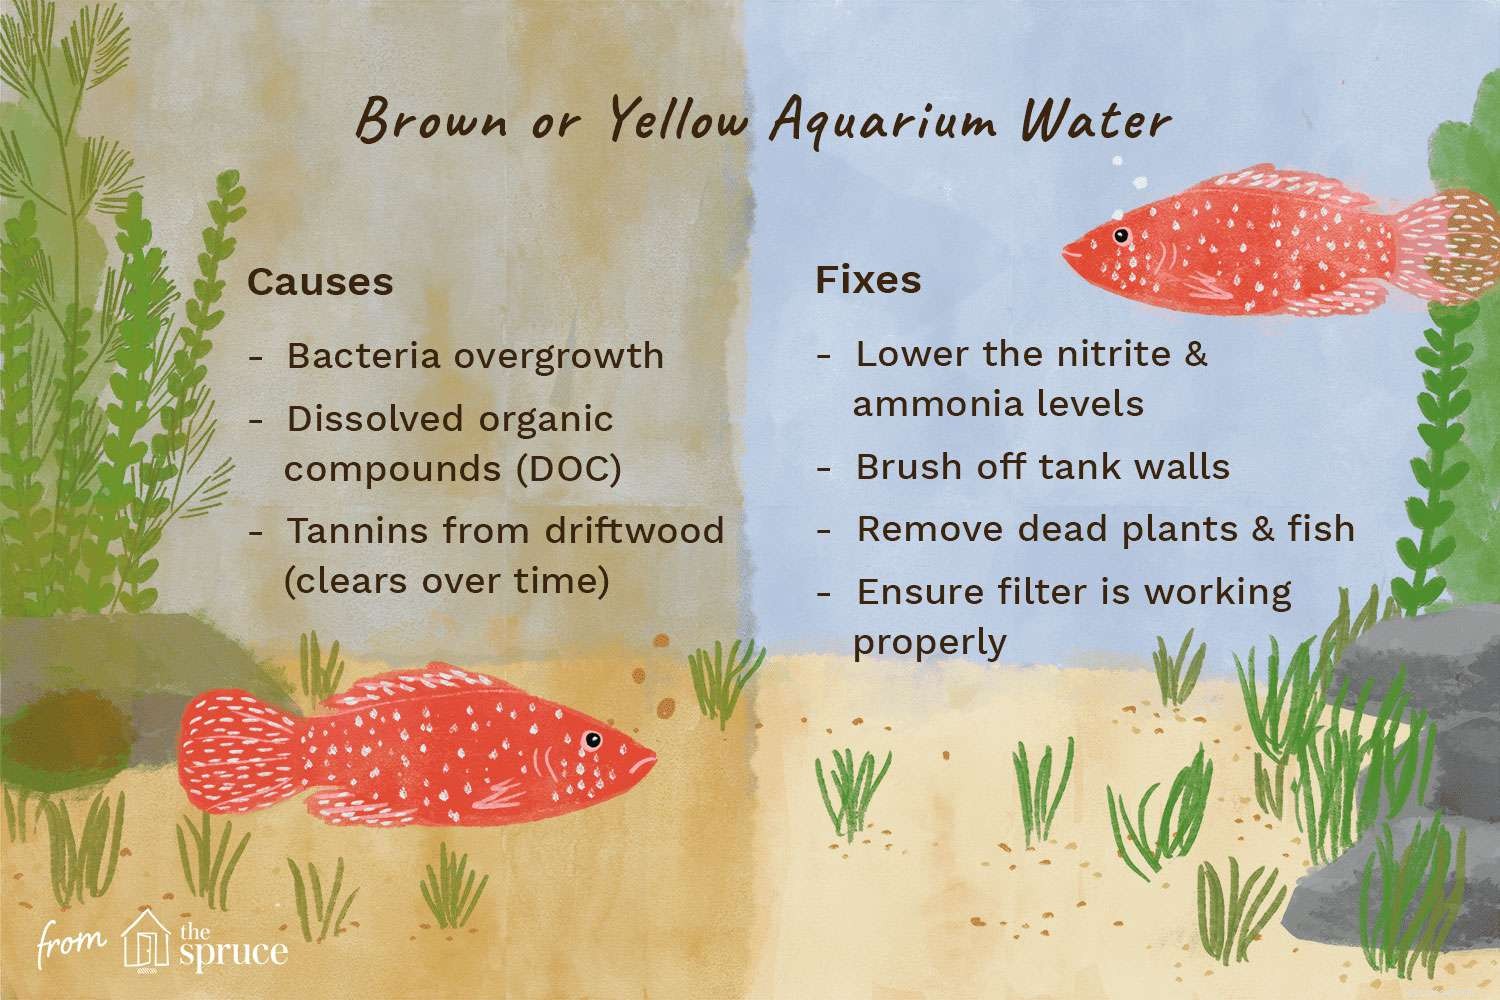 Orsaker och åtgärdar för gult eller brunt akvarievatten